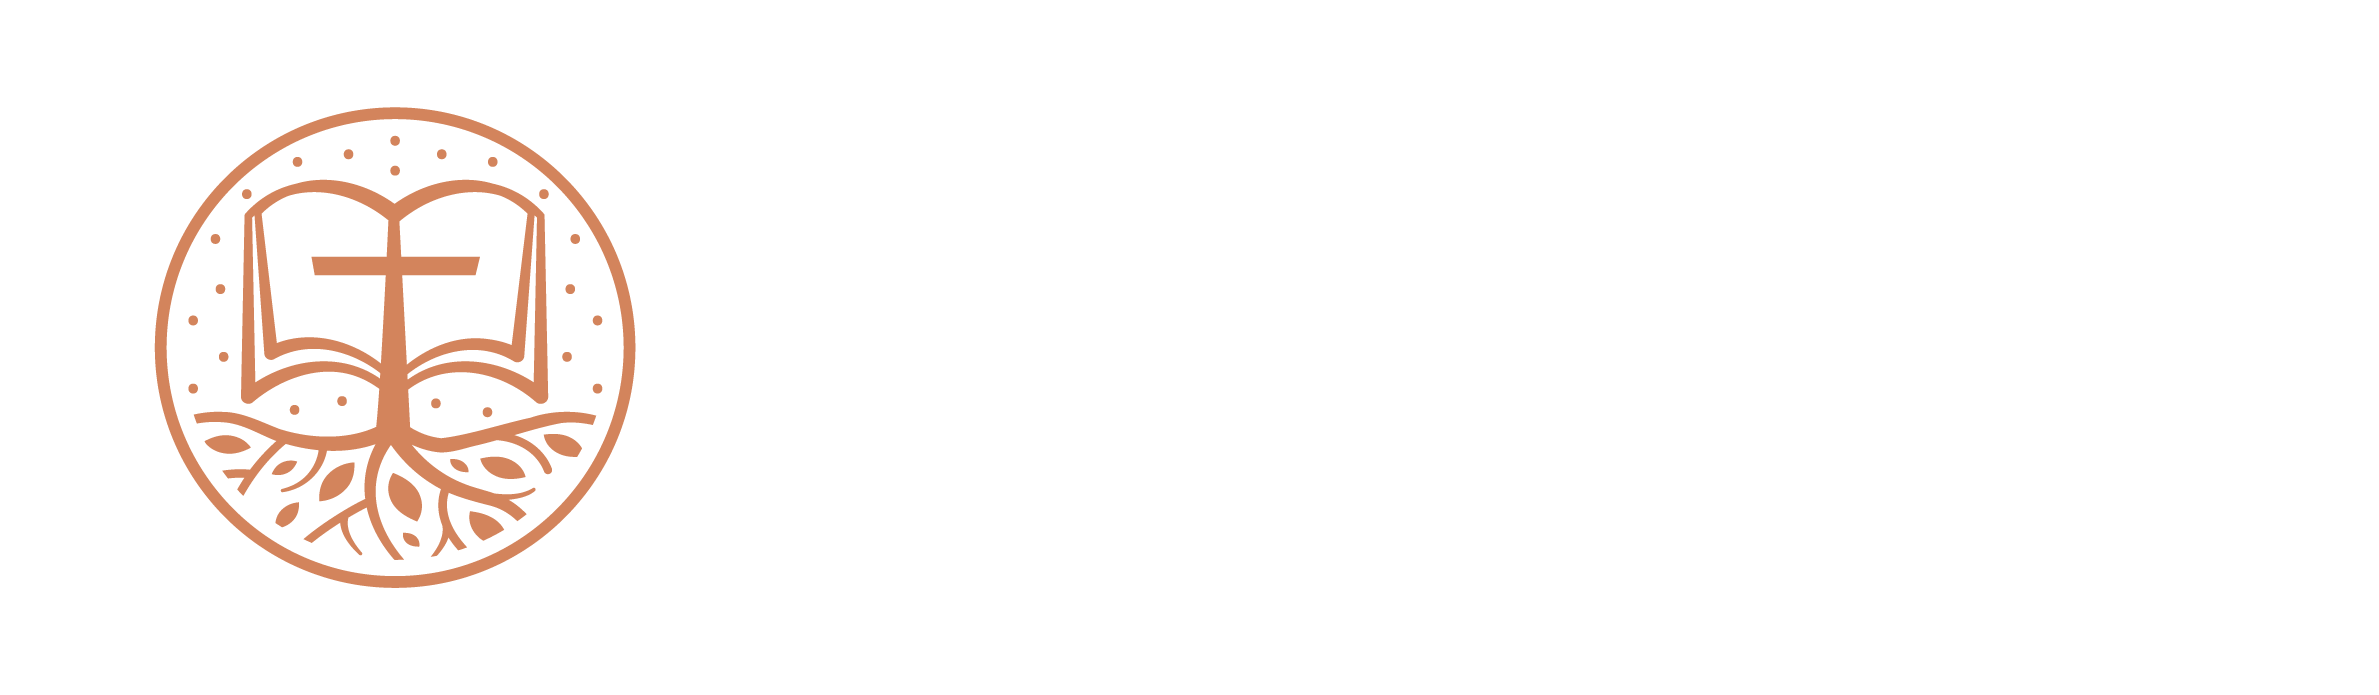 Baptistický zbor Ružomberok